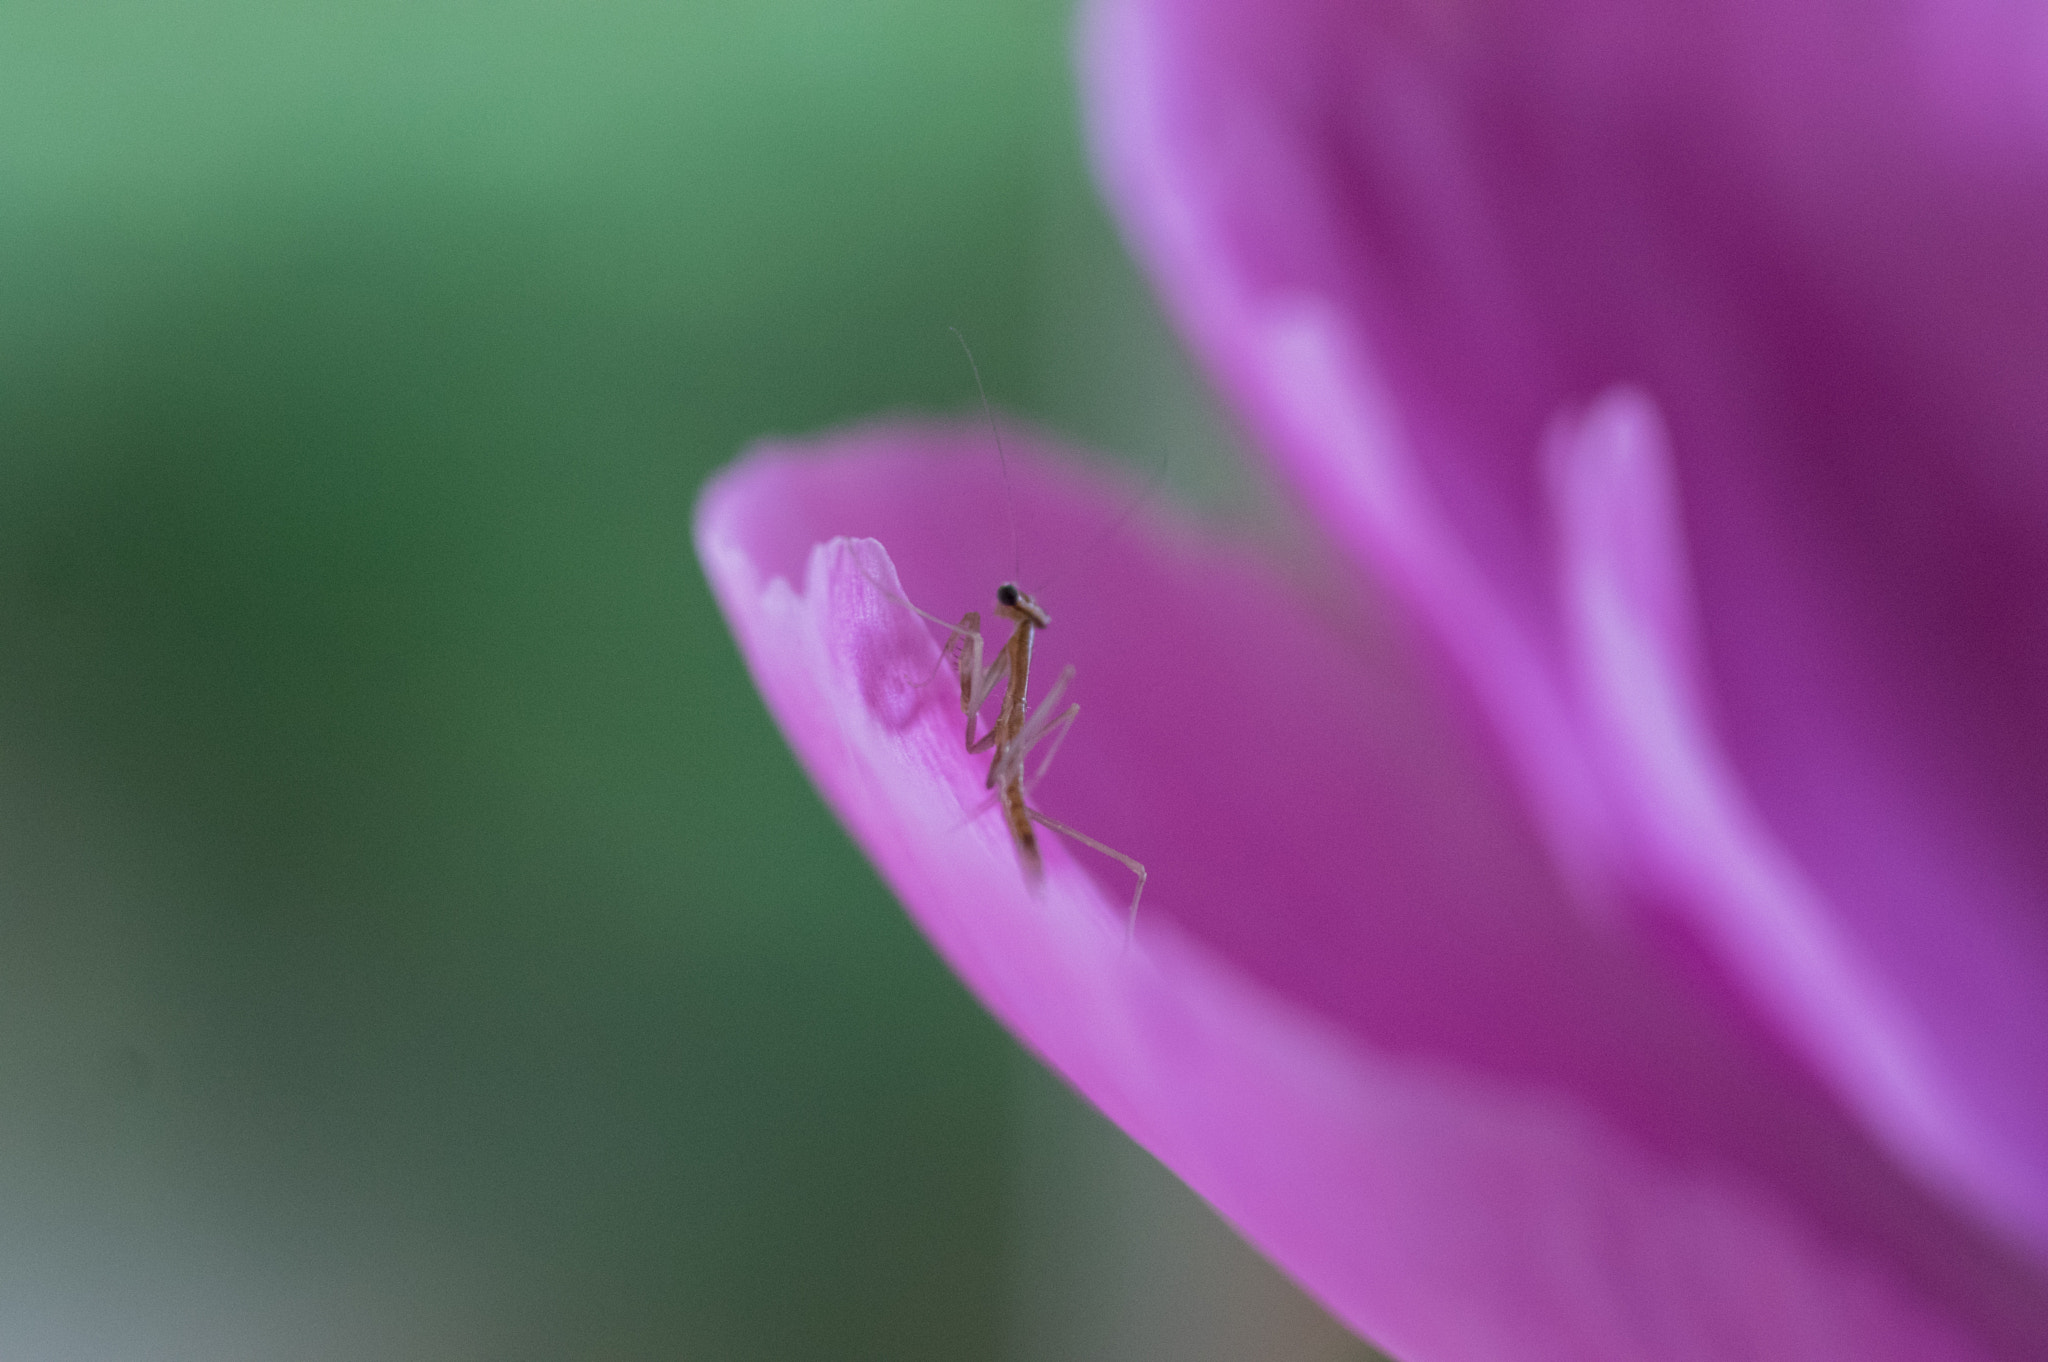 Pentax K-3 sample photo. Praying mantis on petal photography